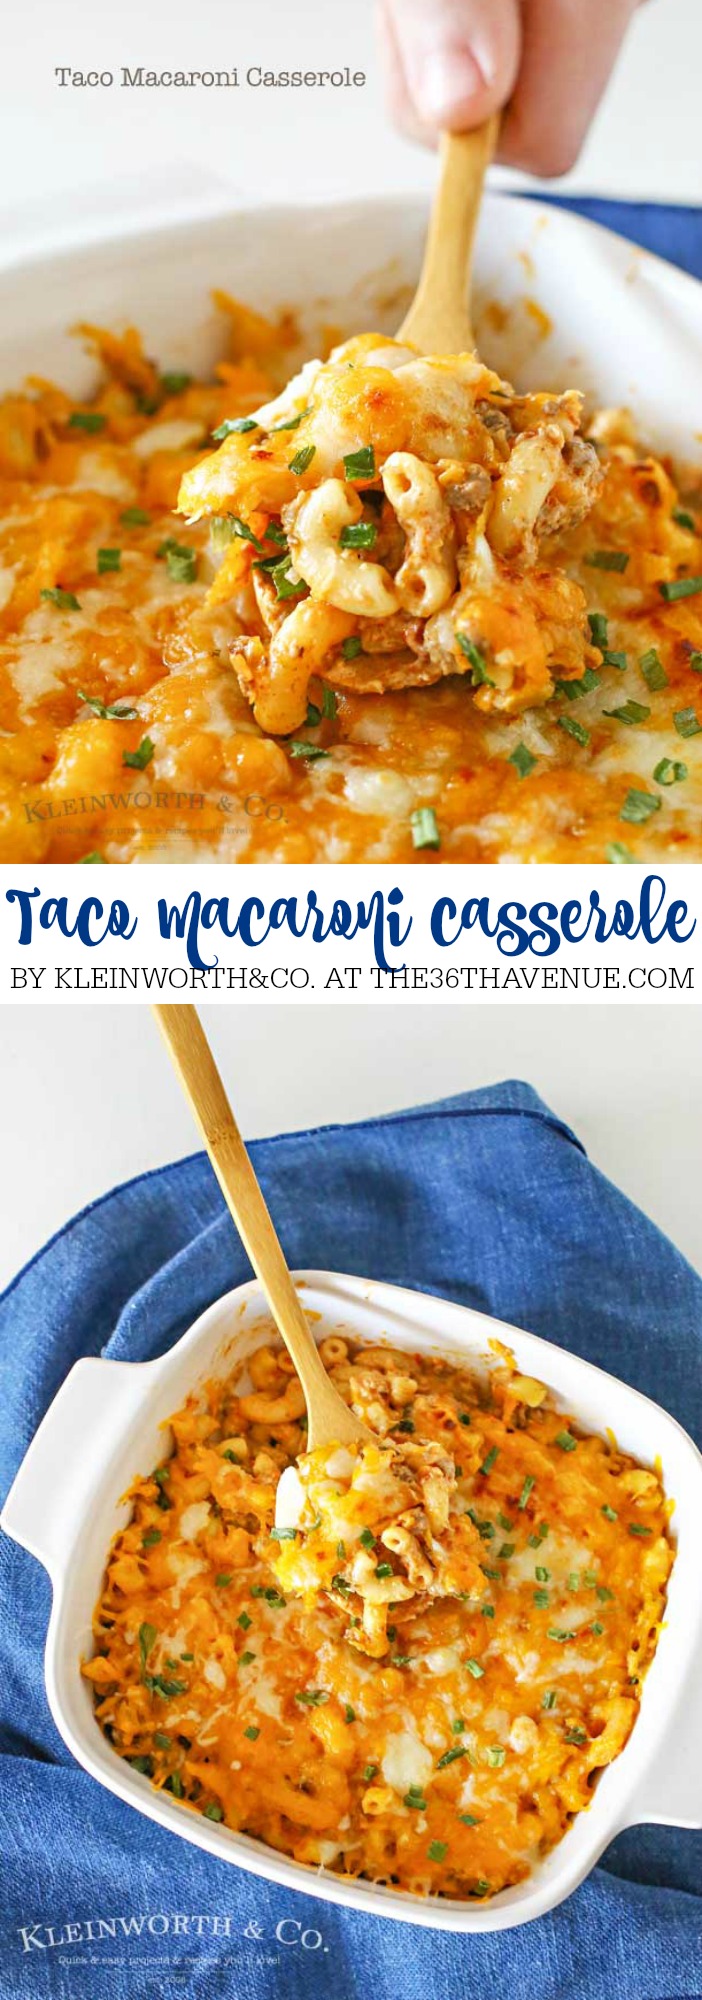 Ce plat de macaroni aux tacos a toutes les saveurs de votre taco préféré, boeuf, assaisonnements... Oh mon dieu, c'est succulent ! PIN IT MAINTENANT et cuire plus tard!